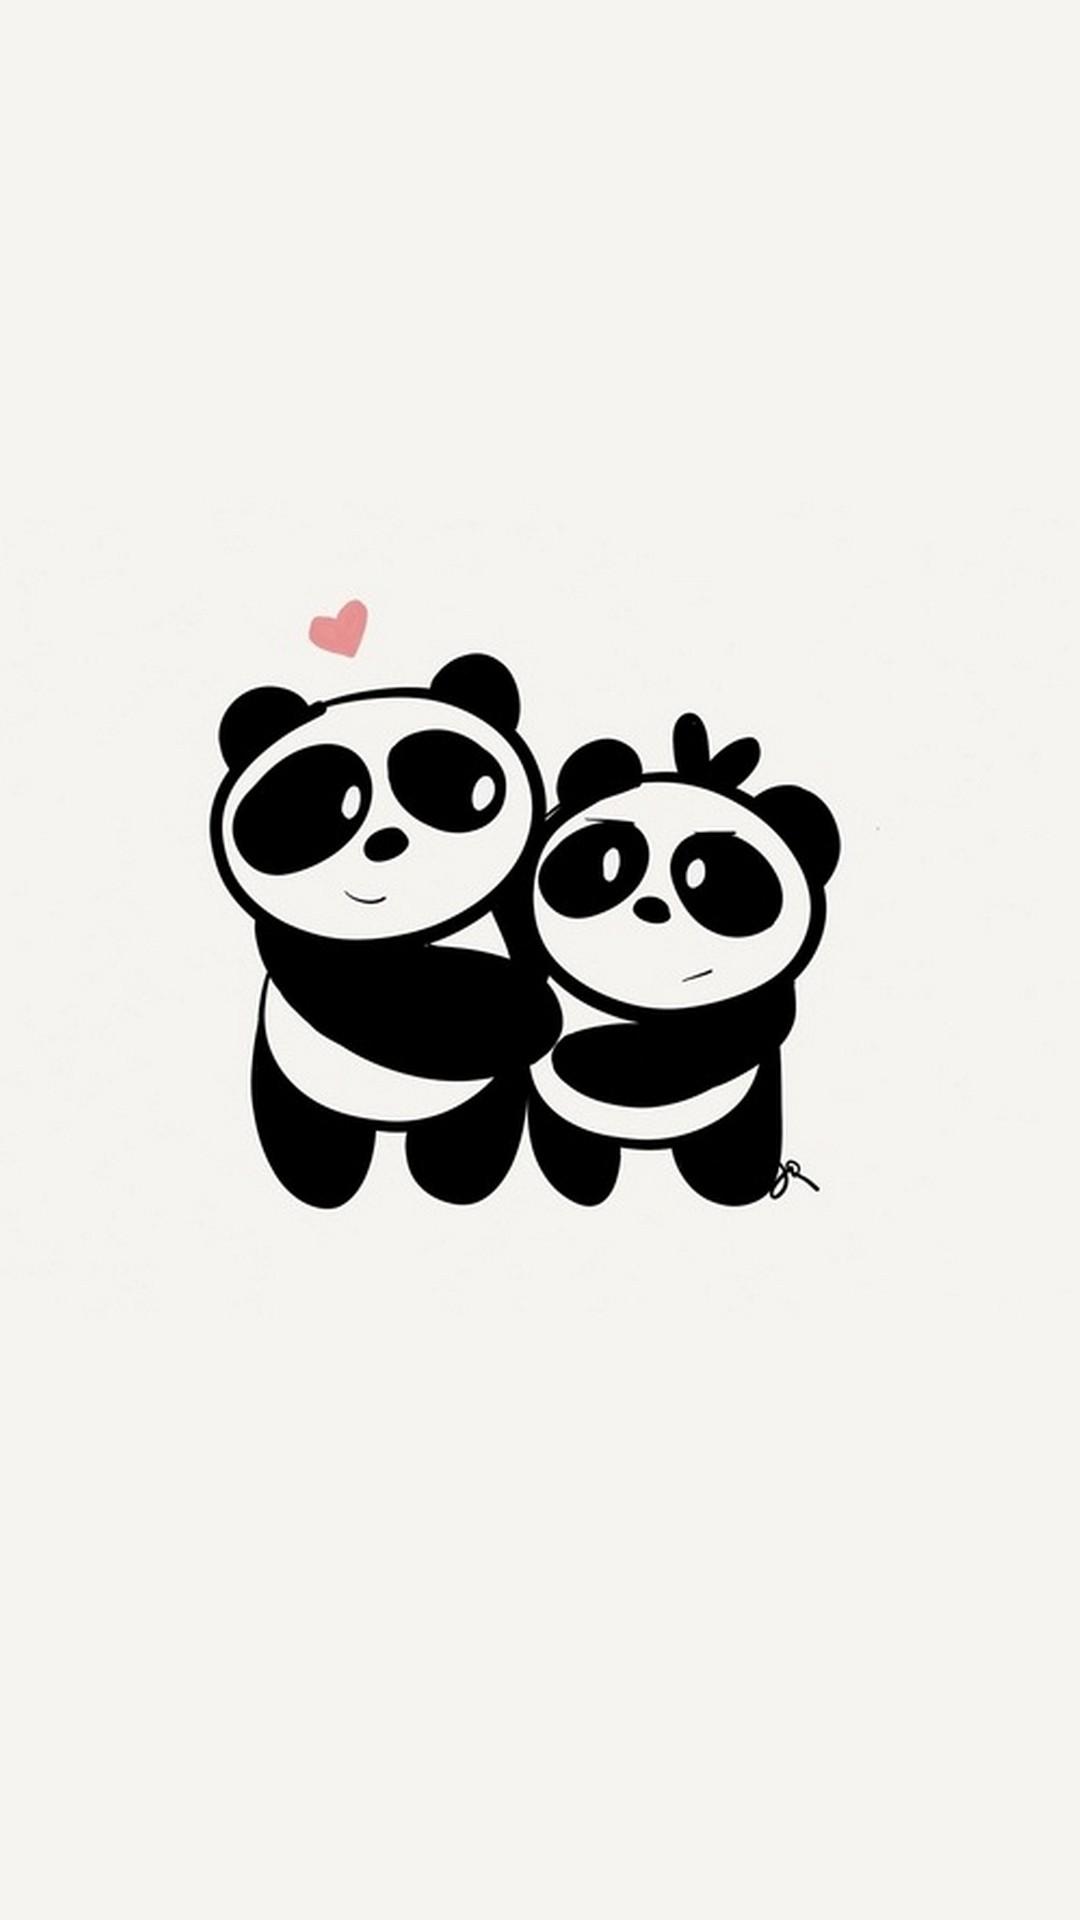 iPhone X Cute Couple Panda Wallpaper 3D iPhone Wallpaper